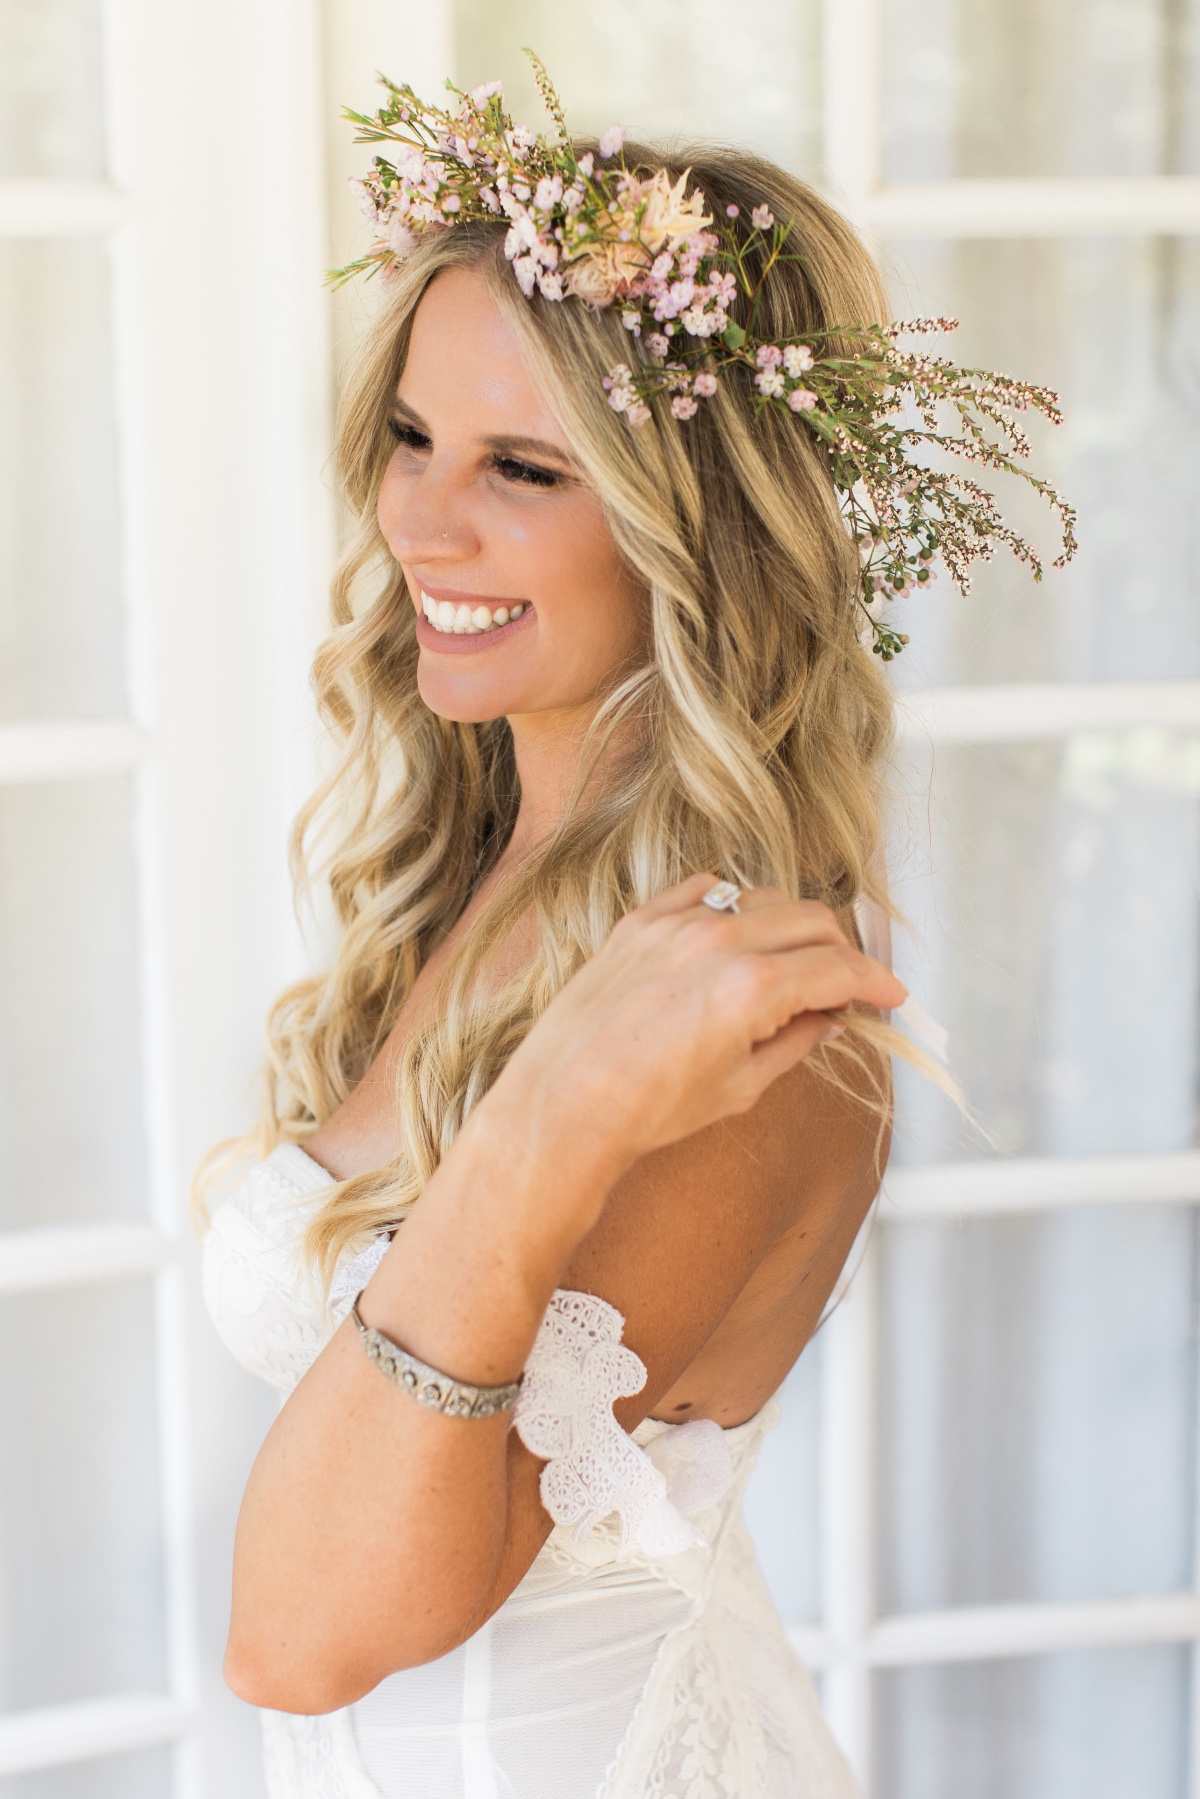 Bridal portrait with floral crown